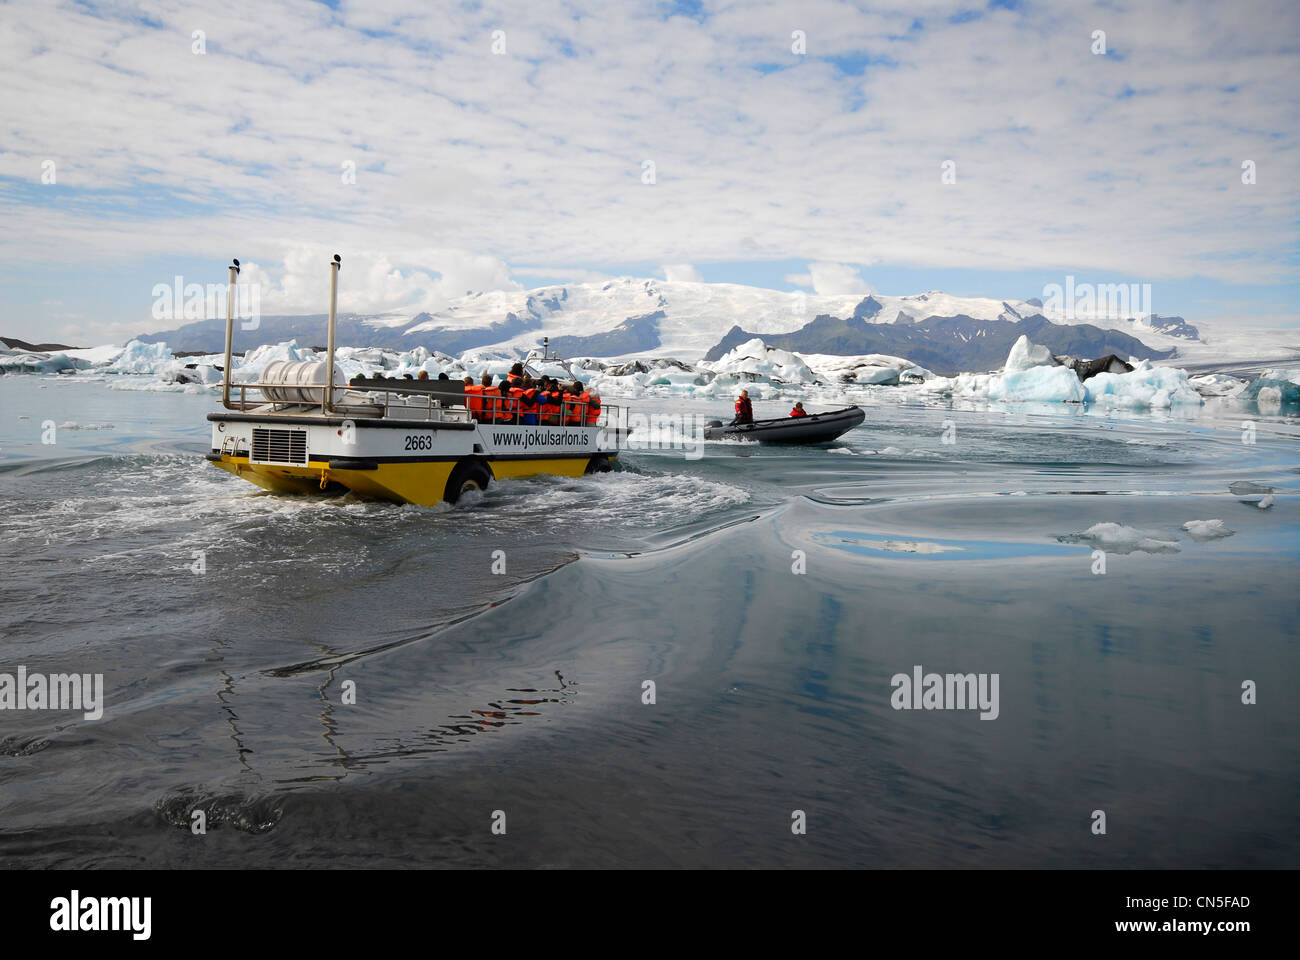 L'Islanda, Regione Austurland, veicolo anfibio per turisti di entrare il Jokulsarlon Lago glaciale preceduto da un Zodiac Foto Stock